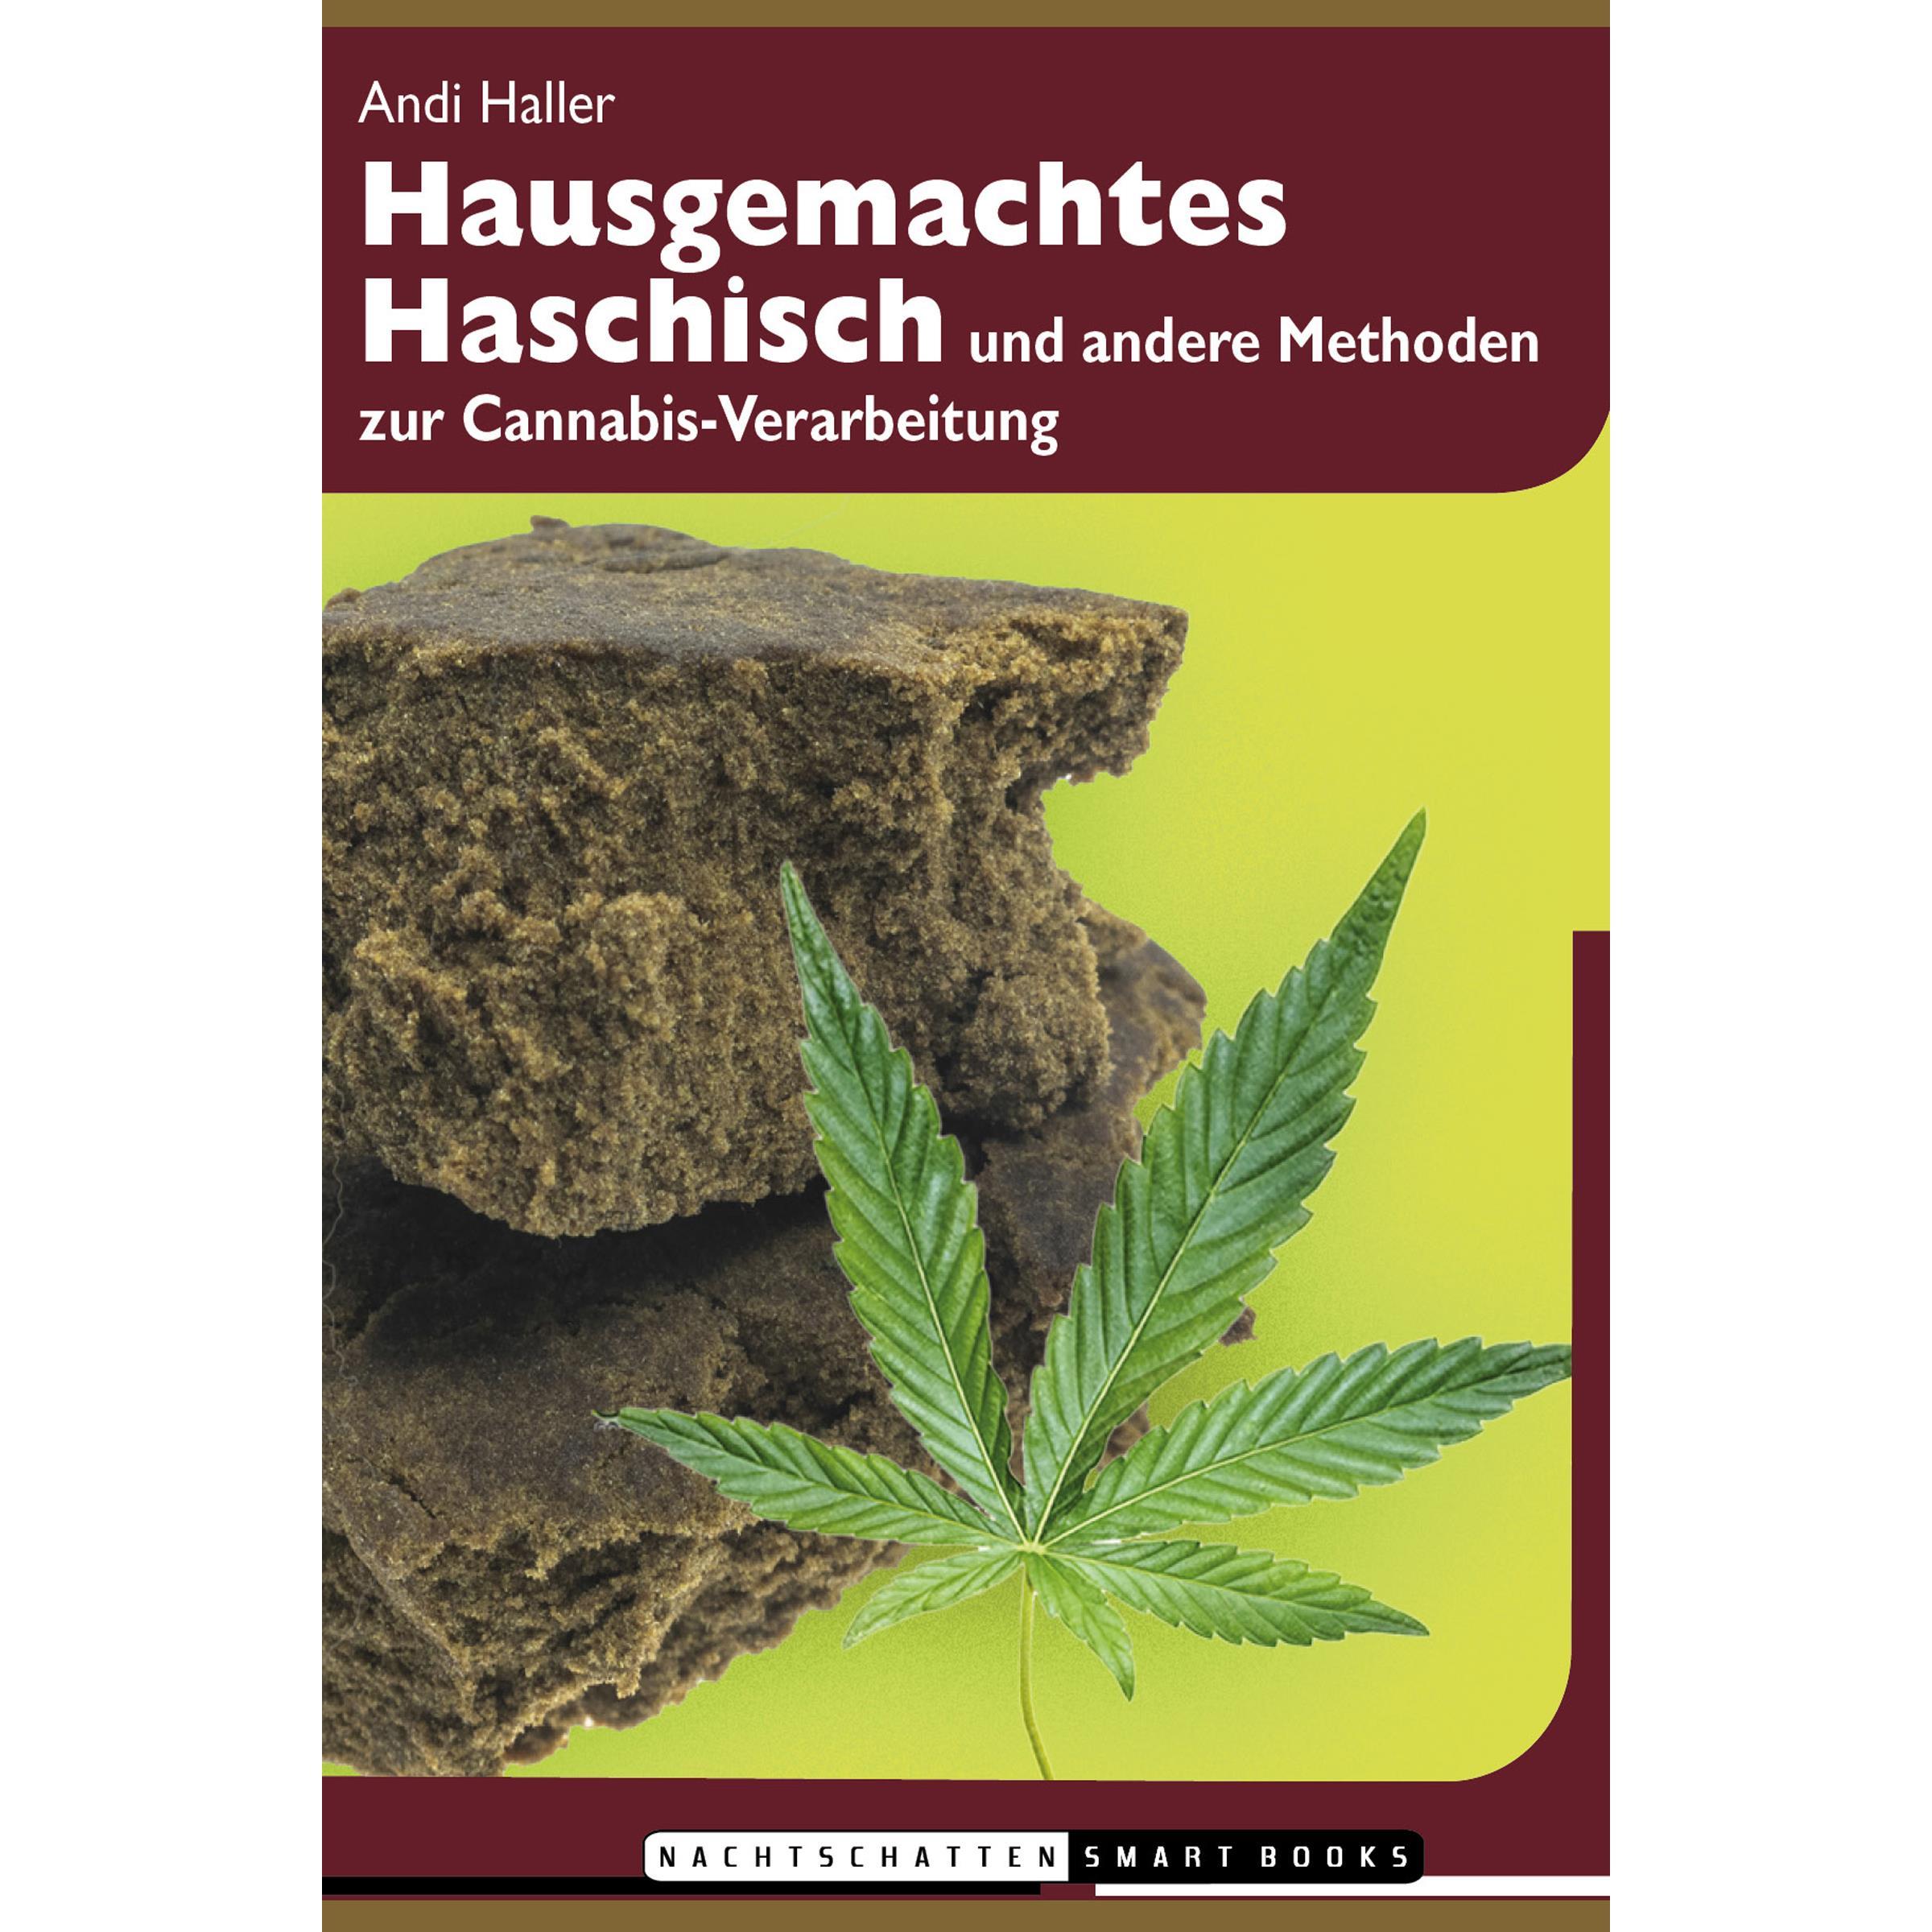 Hausgemachtes Haschisch - Andi Haller (Autor)